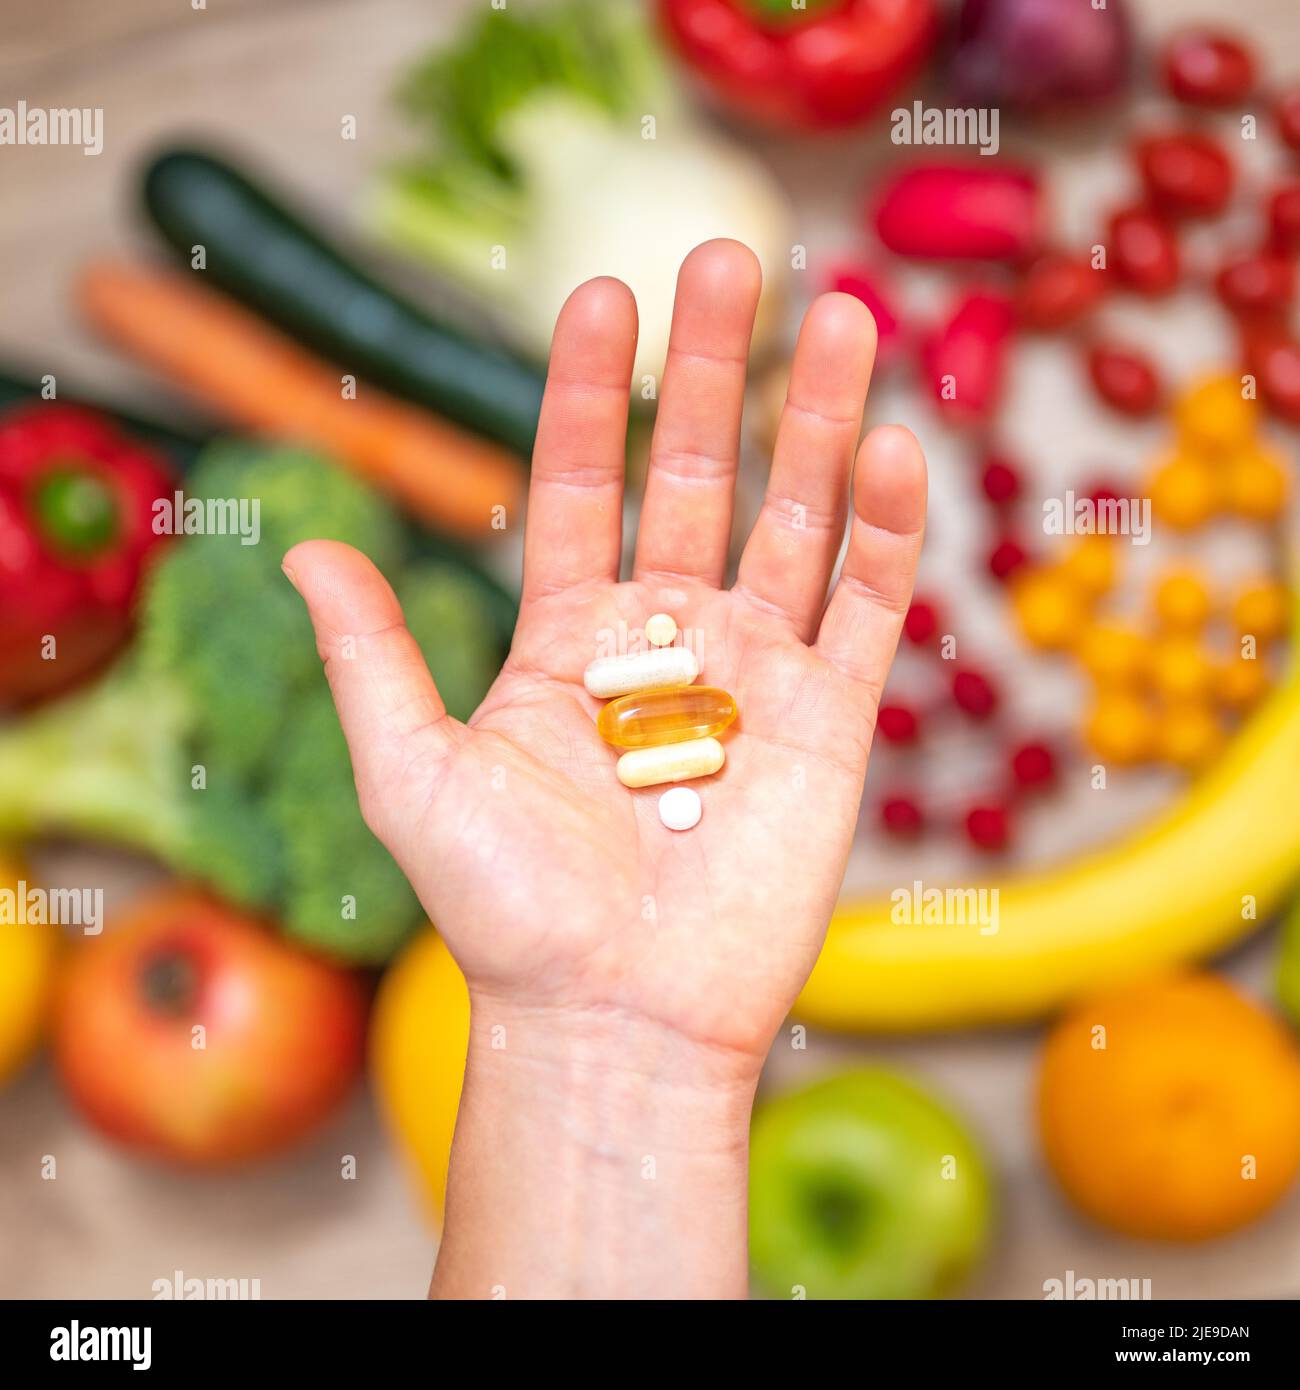 Mano sta tenendo le tovlette di supplemento di cibo sopra una tabella di legno piena di verdure e frutta. Gli integratori alimentari consentono uno stile di vita sano. Foto Stock